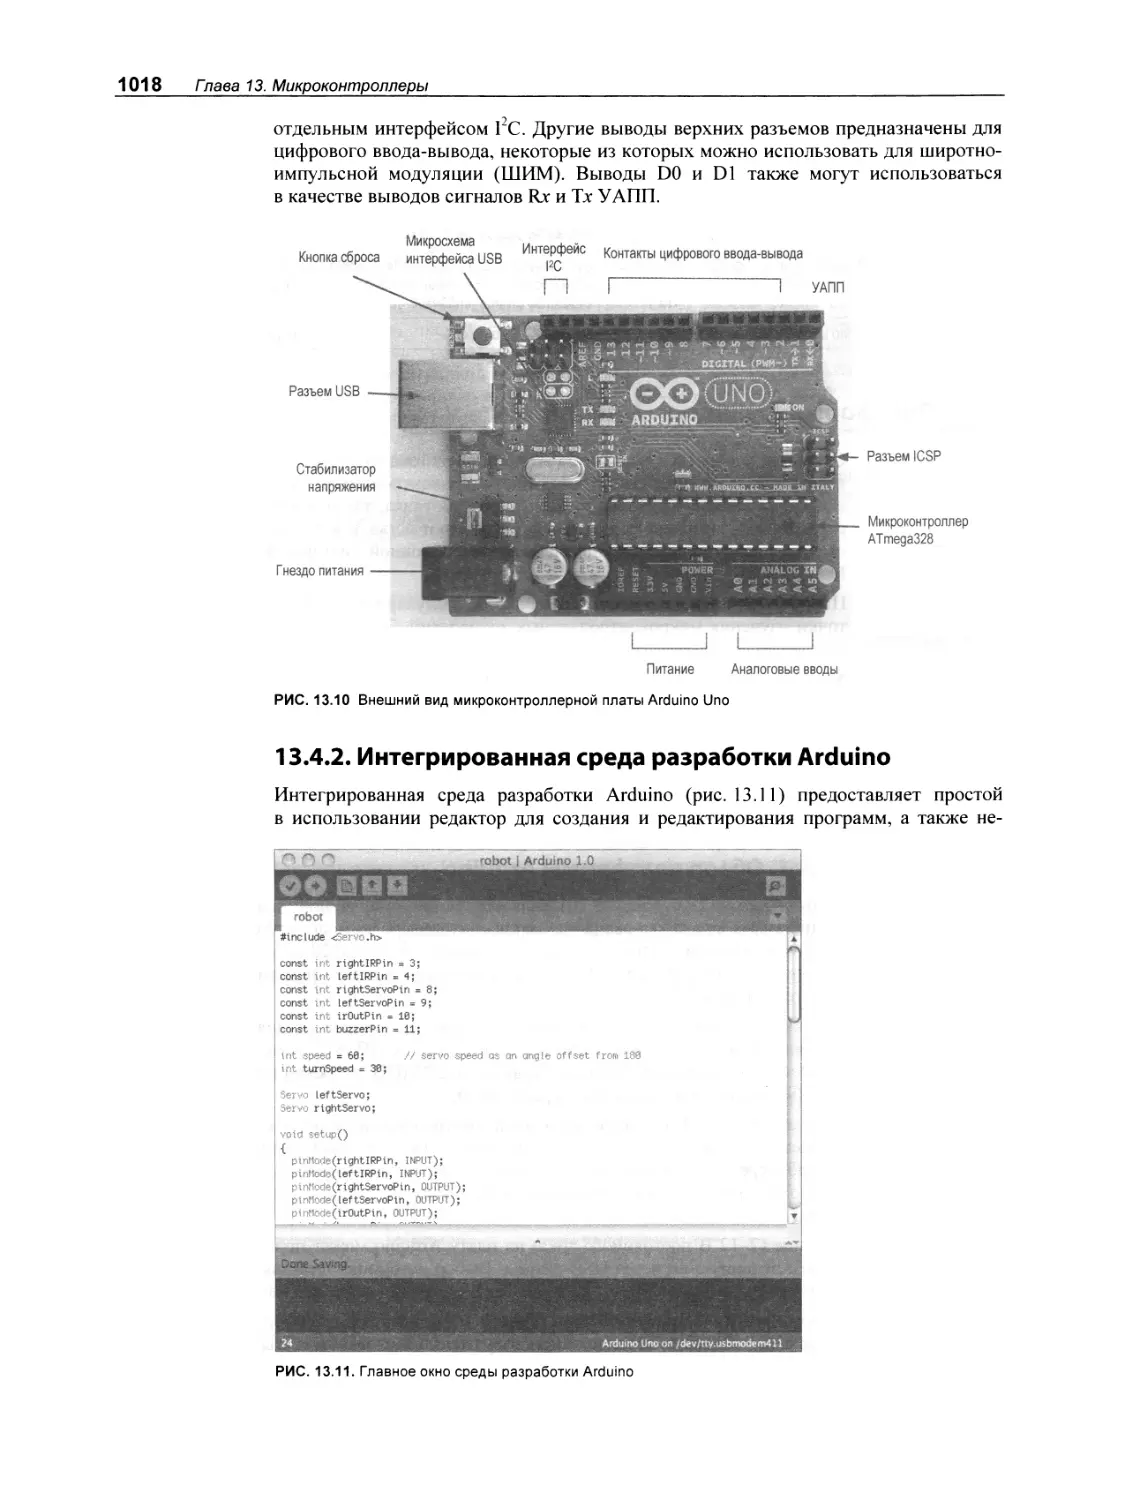 13.4.2. Интегрированная среда разработки Arduino